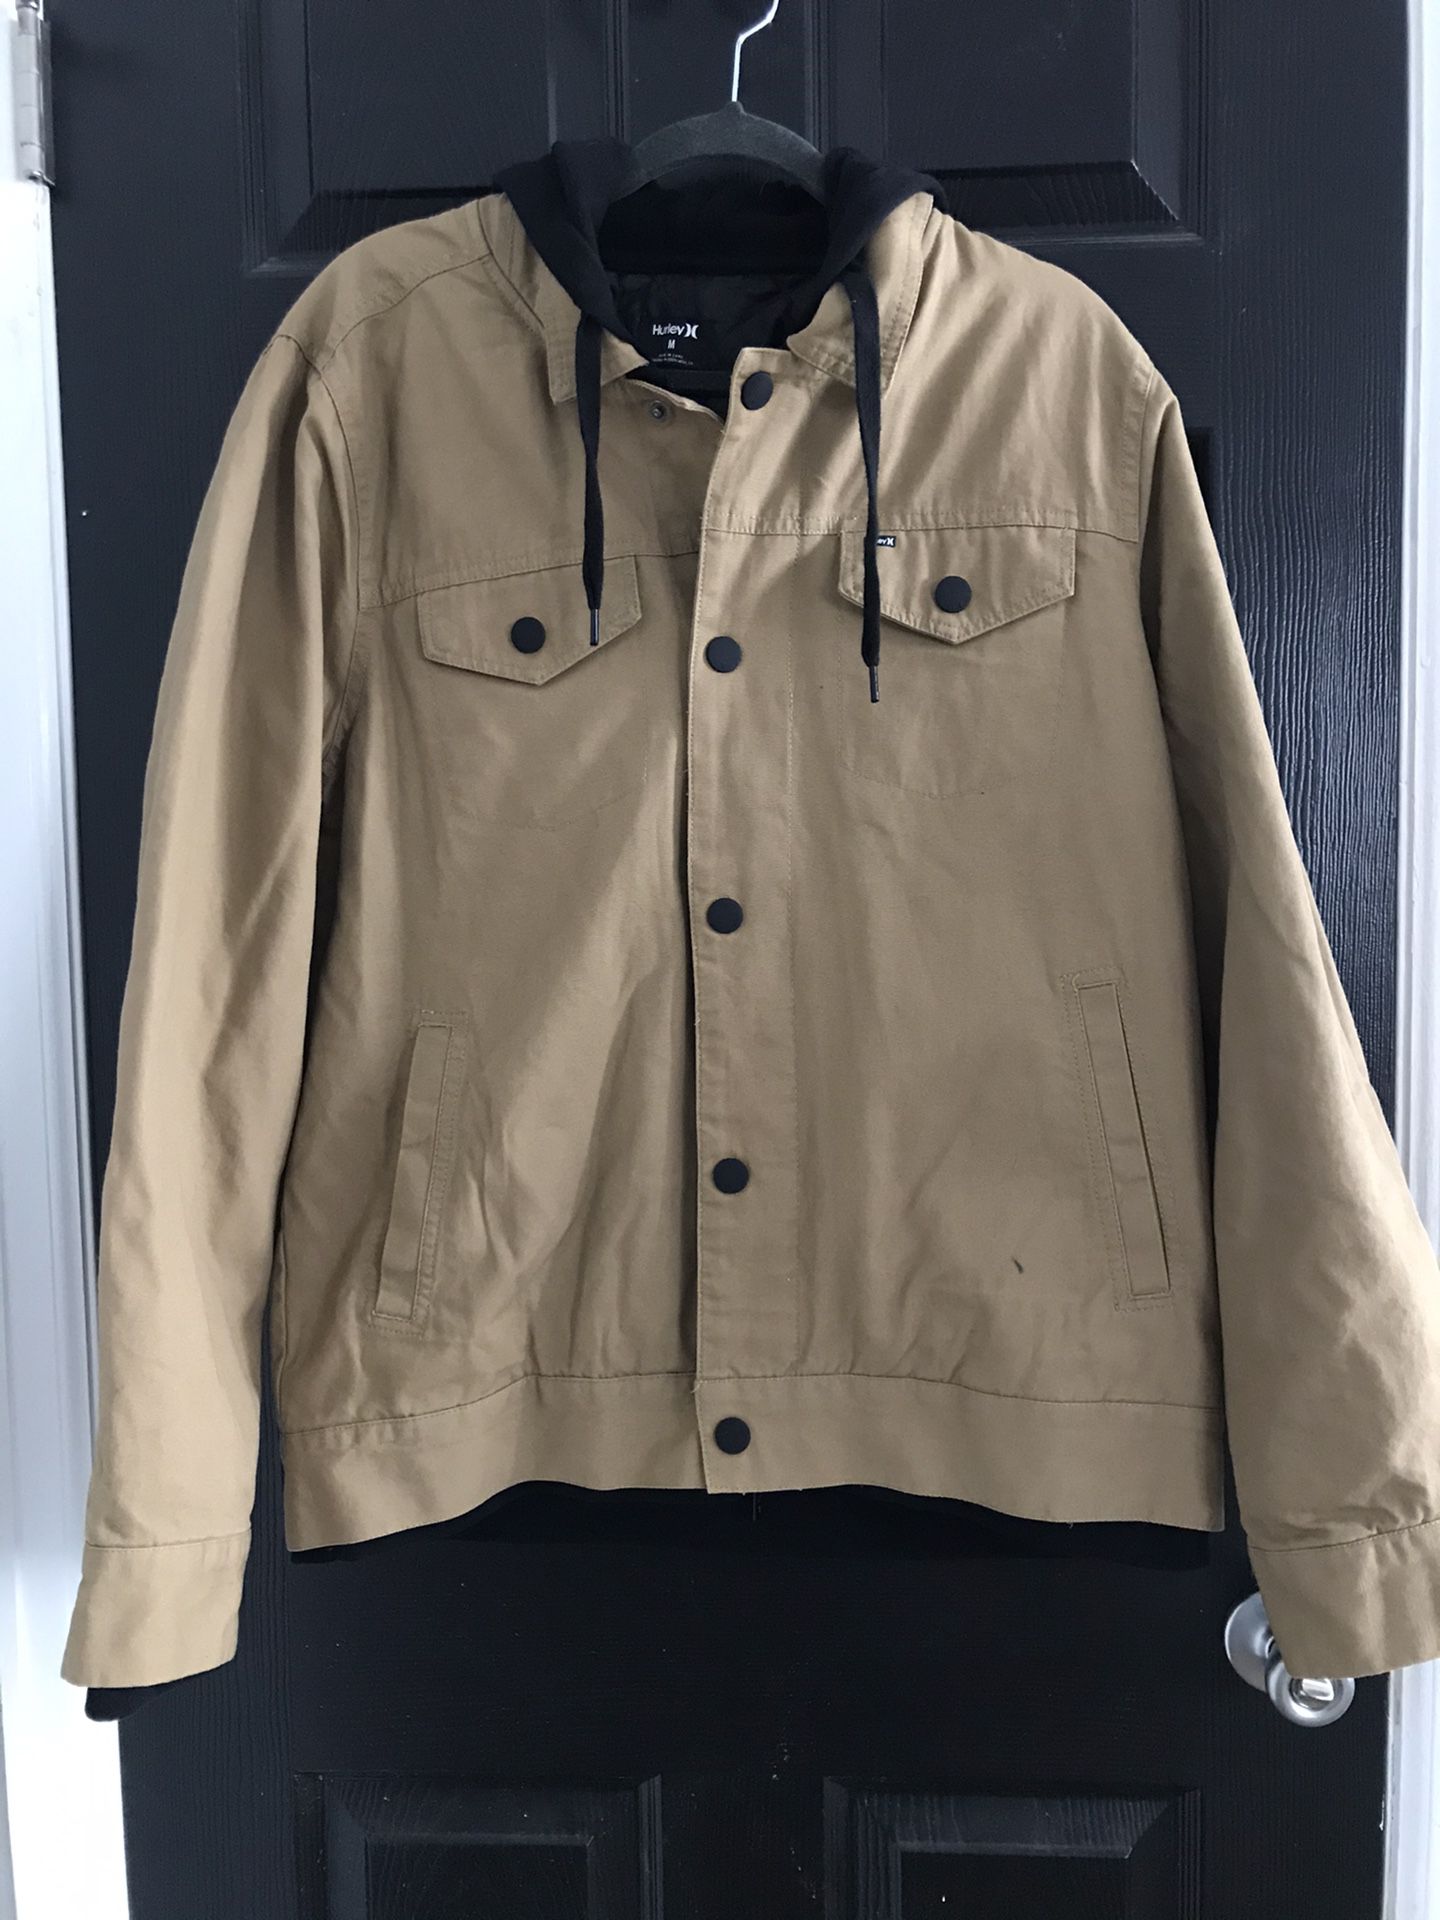 New, men’s medium Hurley jacket